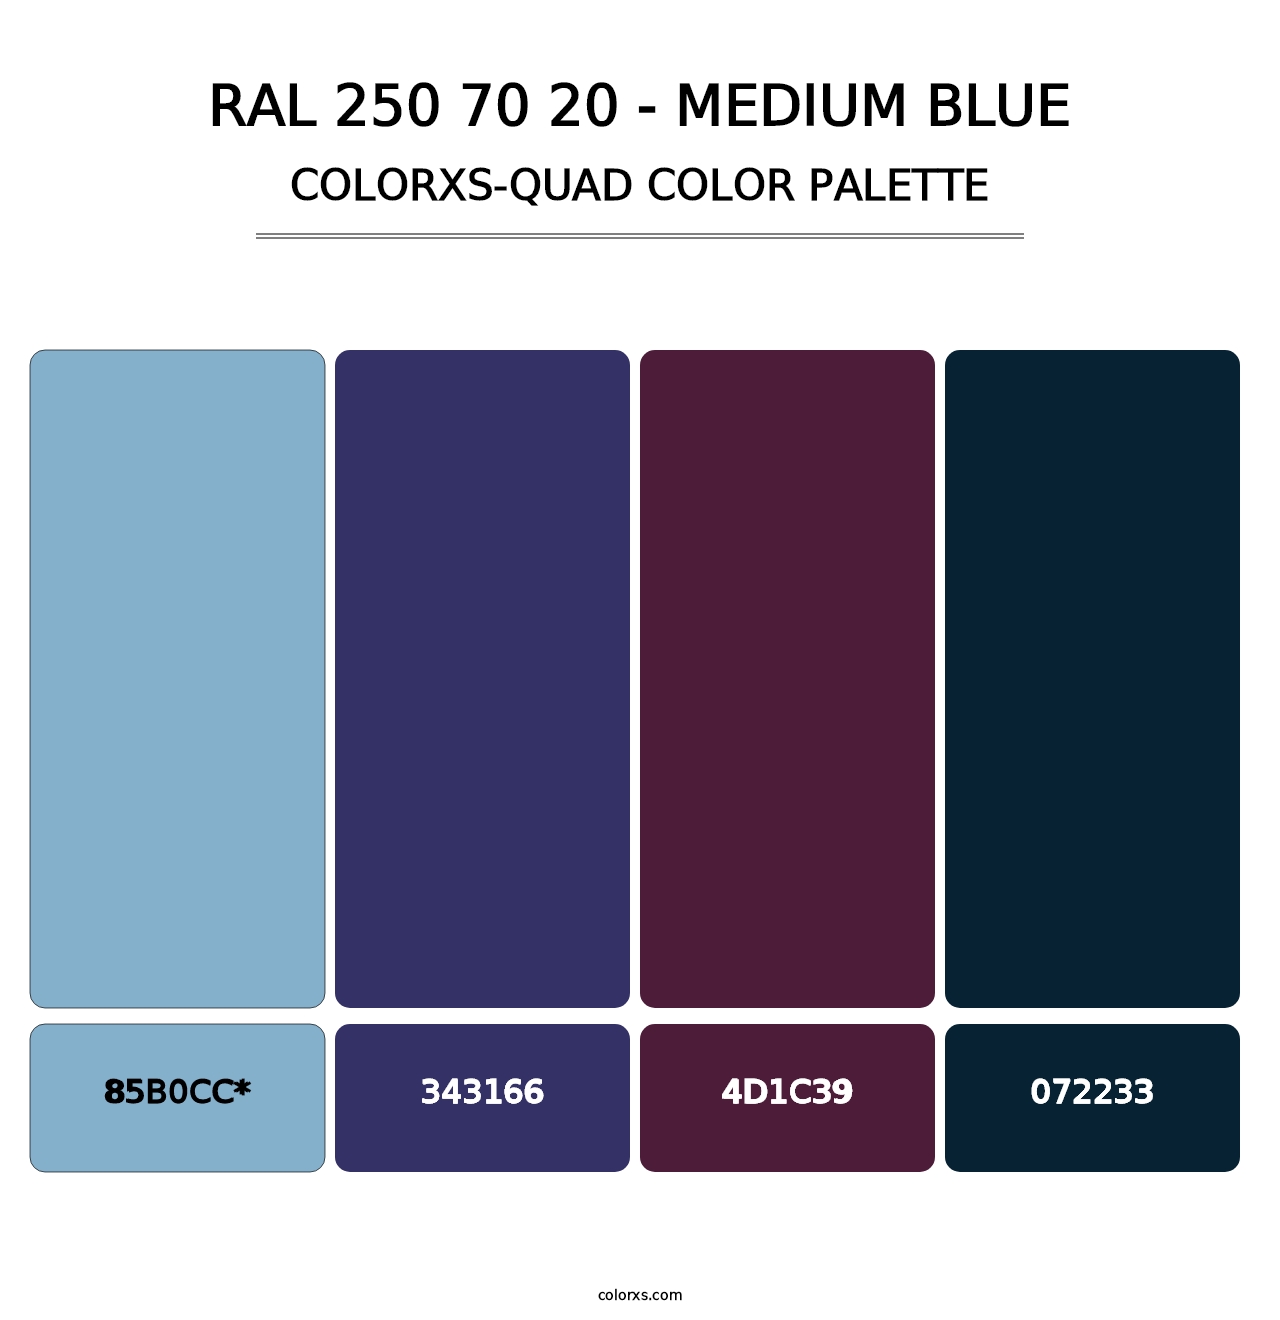 RAL 250 70 20 - Medium Blue - Colorxs Quad Palette